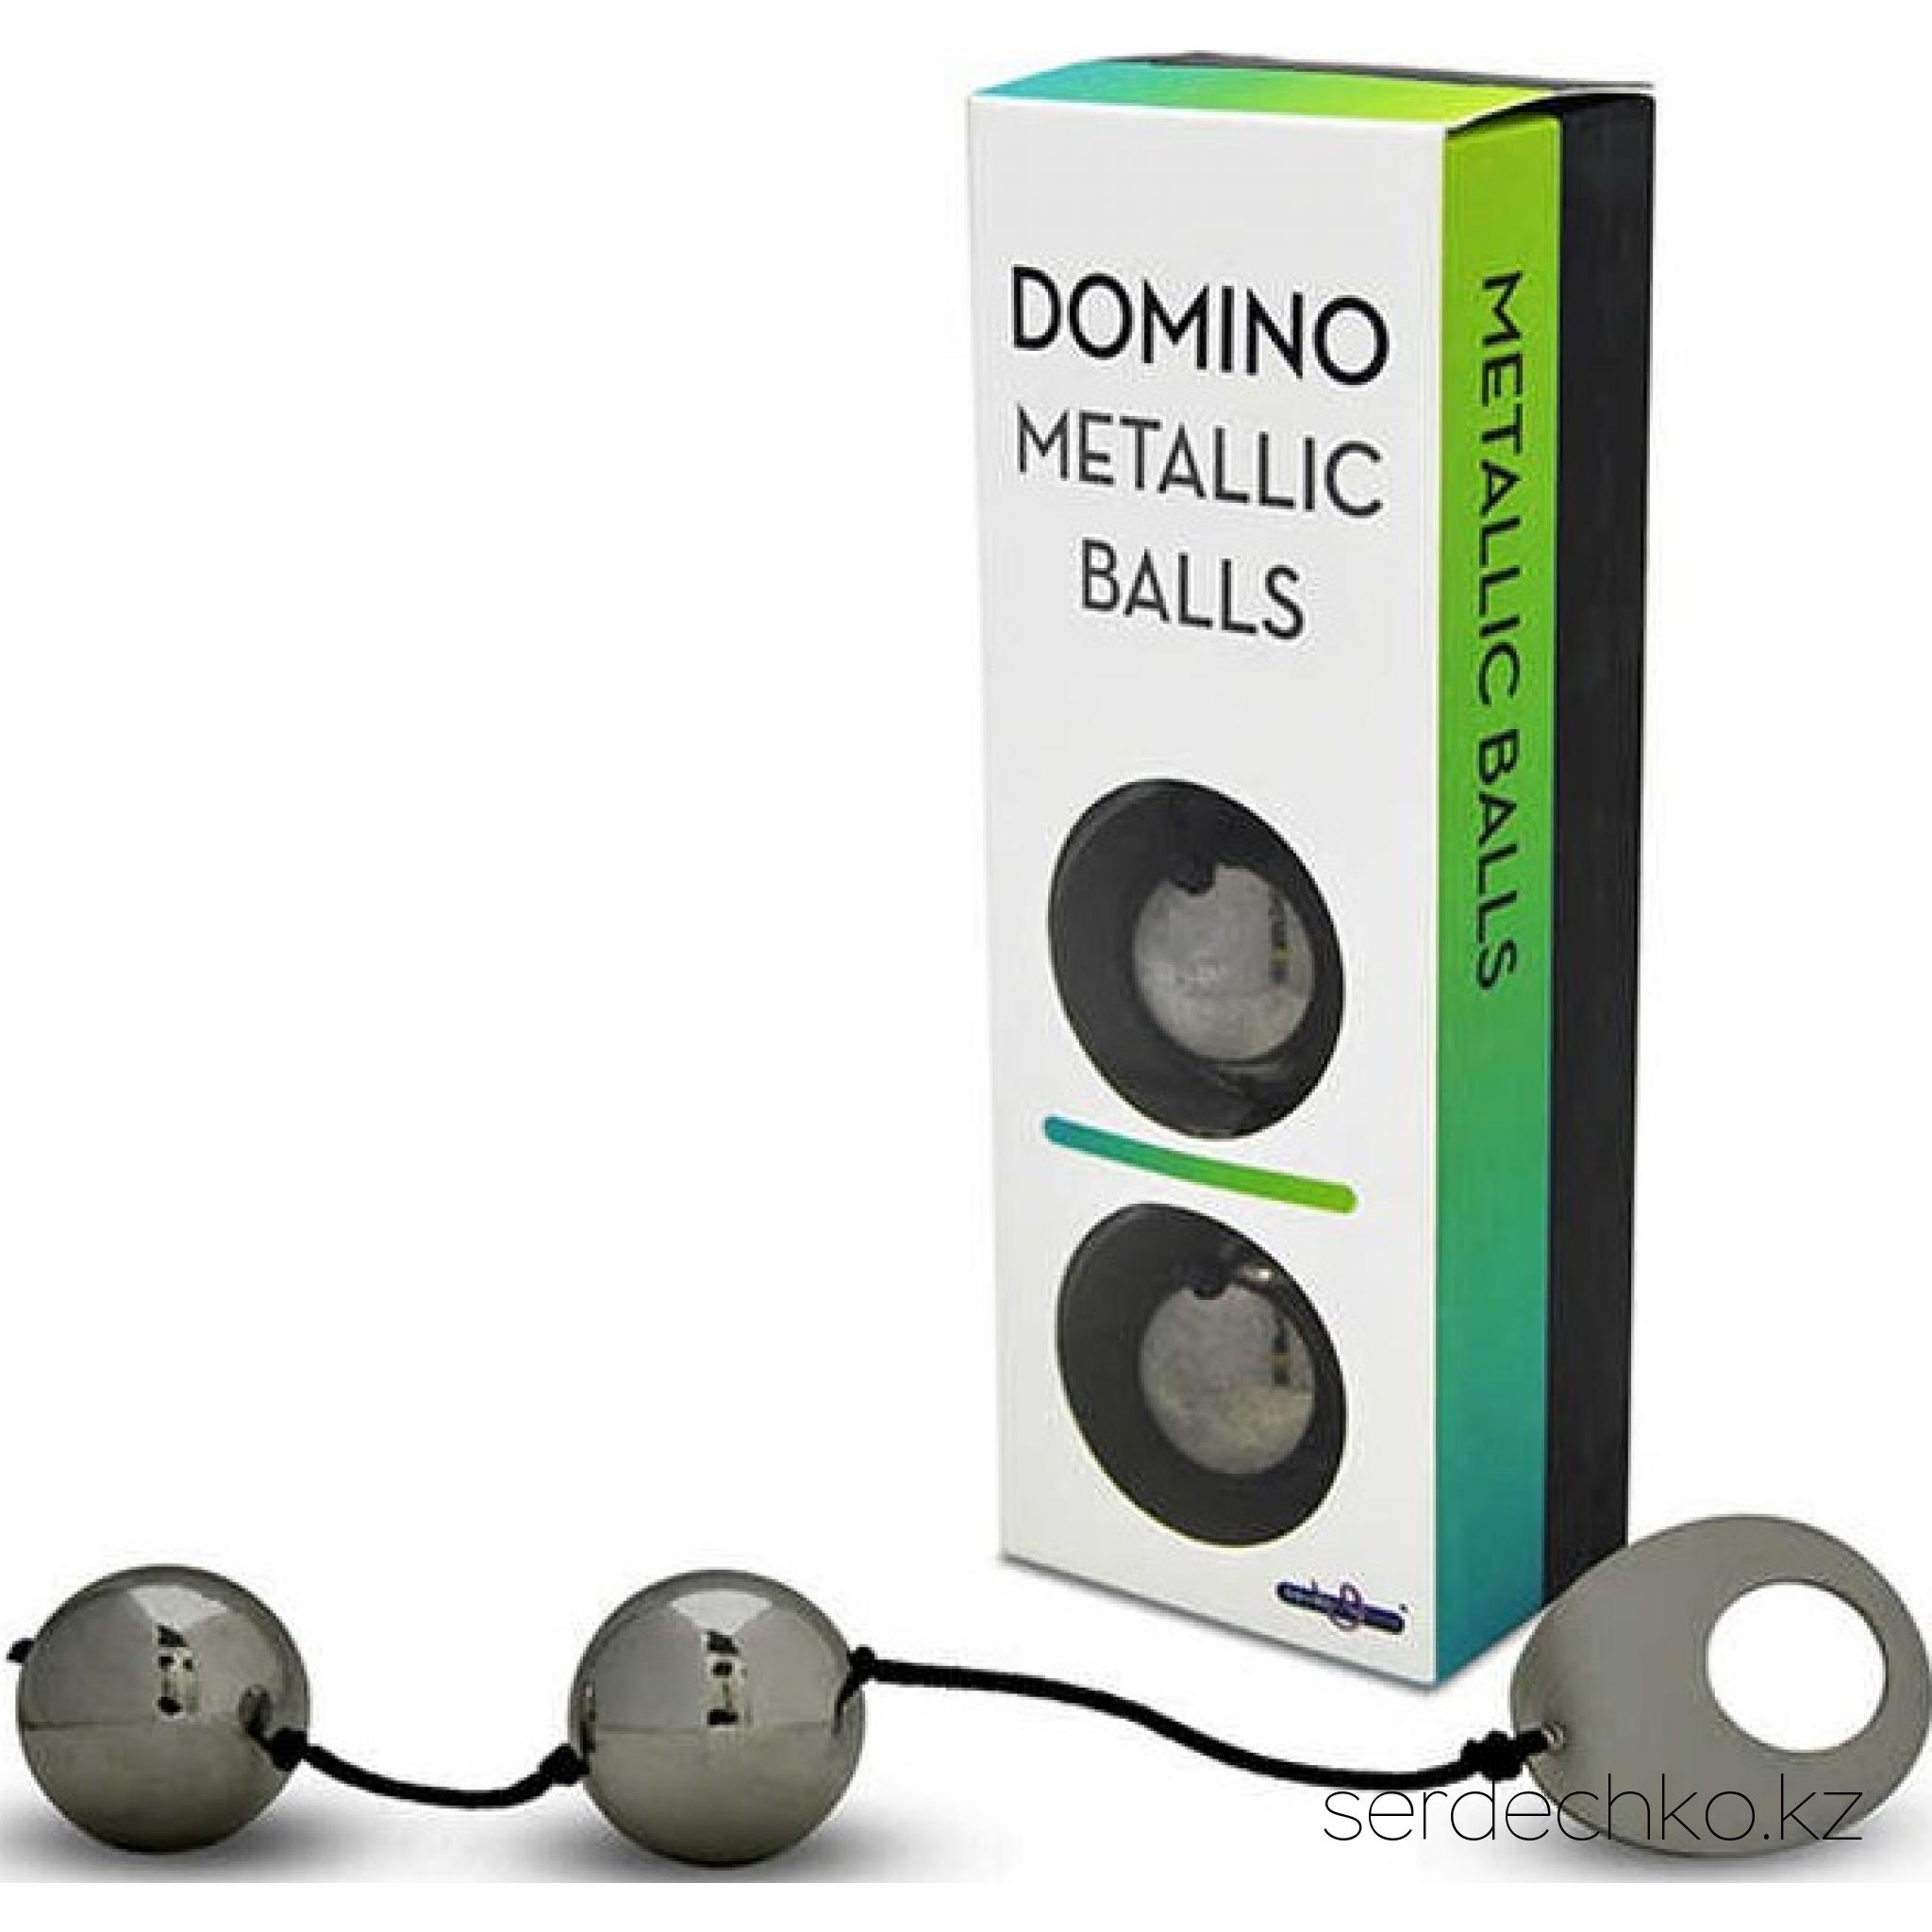 Вагинальные шарики металлические Domino Metallic Balls, 
	Красиво выглядеть – еще не всё, на что способна женщина, чтобы удивить своего мужчину. Быть на высоте нужно везде, в том числе и в постели. Испробуйте на себе действие вагинальных шариков Domino Metallic Balls.
	Носите с удовольствием!
	Ношение вагинальных шариков – самый действенный метод сделать свои интимные мышцы более сильными и эластичными. Проводите тренировки ежедневно и ощутите положительный результат уже после первой недели использования.
	Пара тяжелых металлических шариков, соединенных между собой ниткой – это ваш шанс стать лучшей женщиной в жизни своего мужчины. Покажите ему, на что способны вагинальные мышцы женщины и увидитесь результату сами!
	После длительной тренировки вы сможете сильно сжимать член своего партнера во время секса с такой силой, как будто вы делаете это руками. Схватите его за причинное место – он будет в восторге от ваших умений!
	Помните, что положительный результат достигается лишь при регулярном использовании шариков.  
